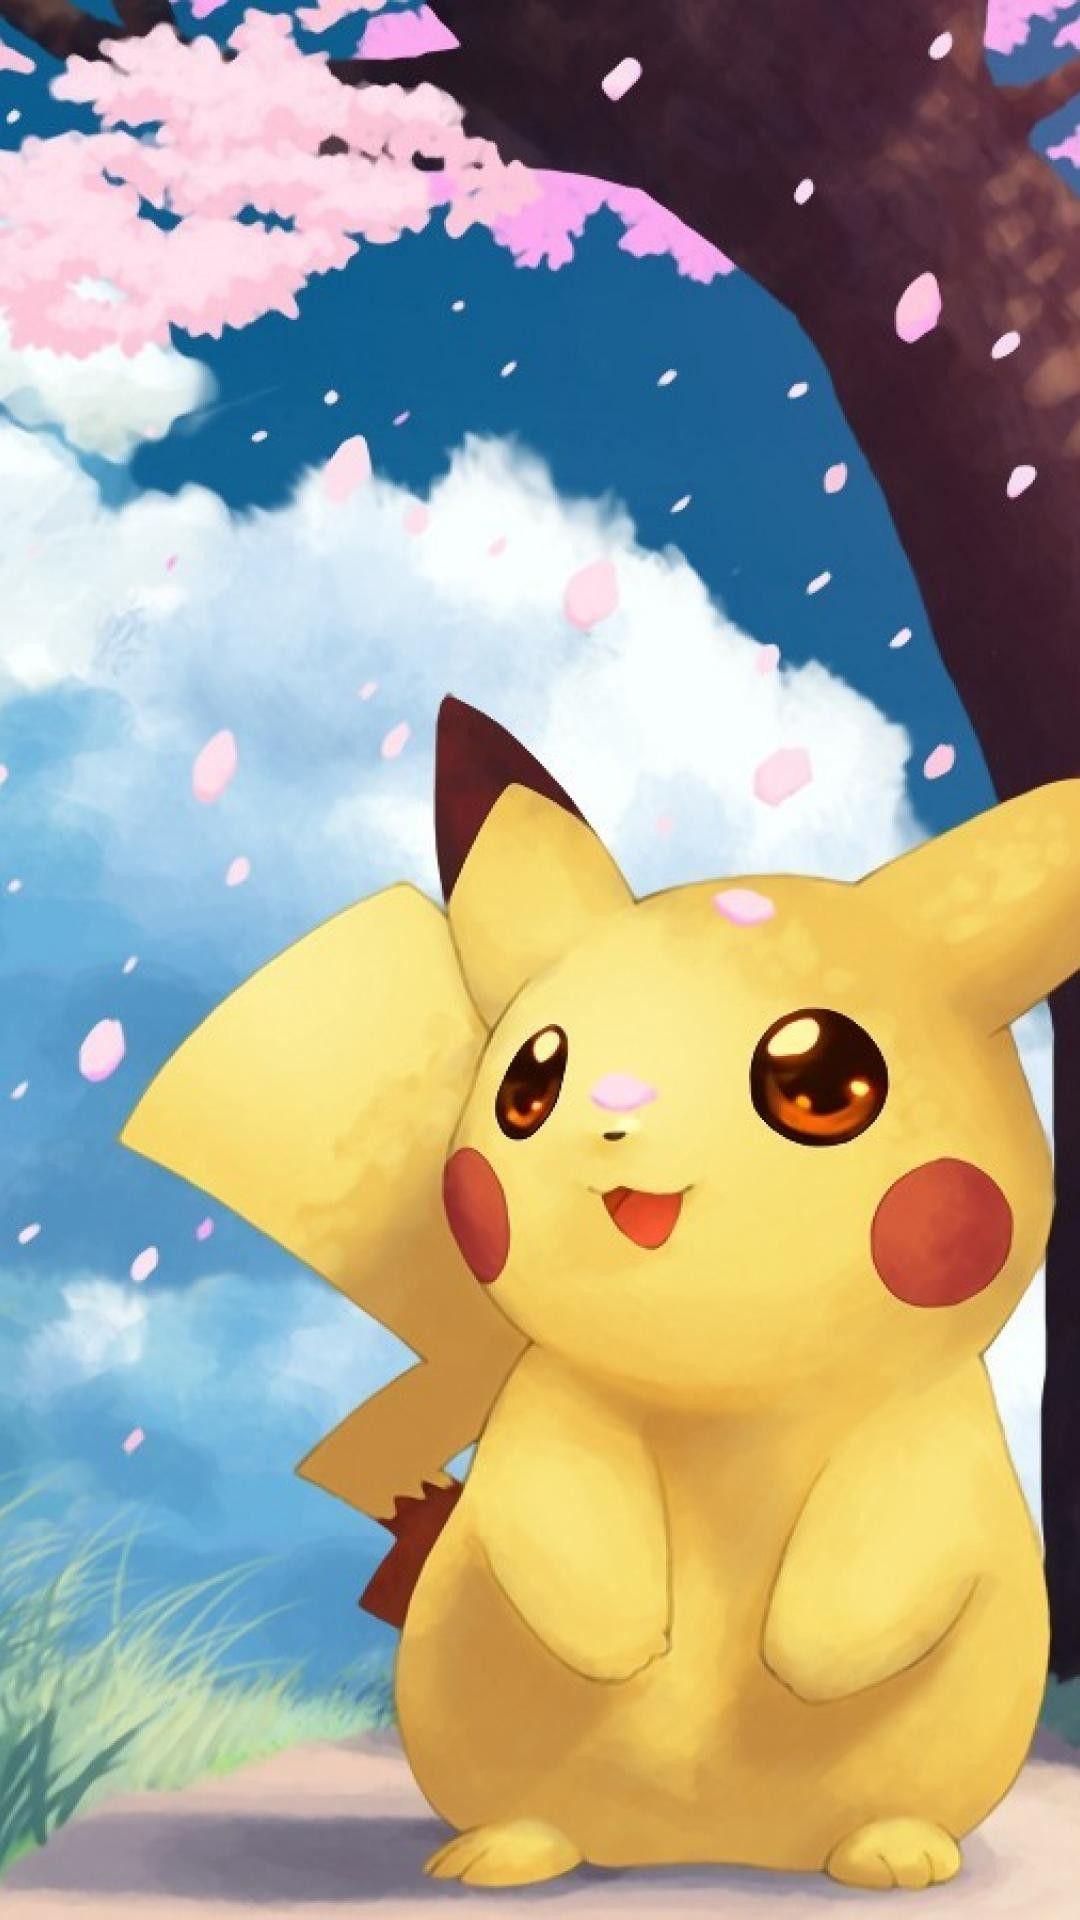 Cute Pokemon iPhone Wallpapers - Top Những Hình Ảnh Đẹp